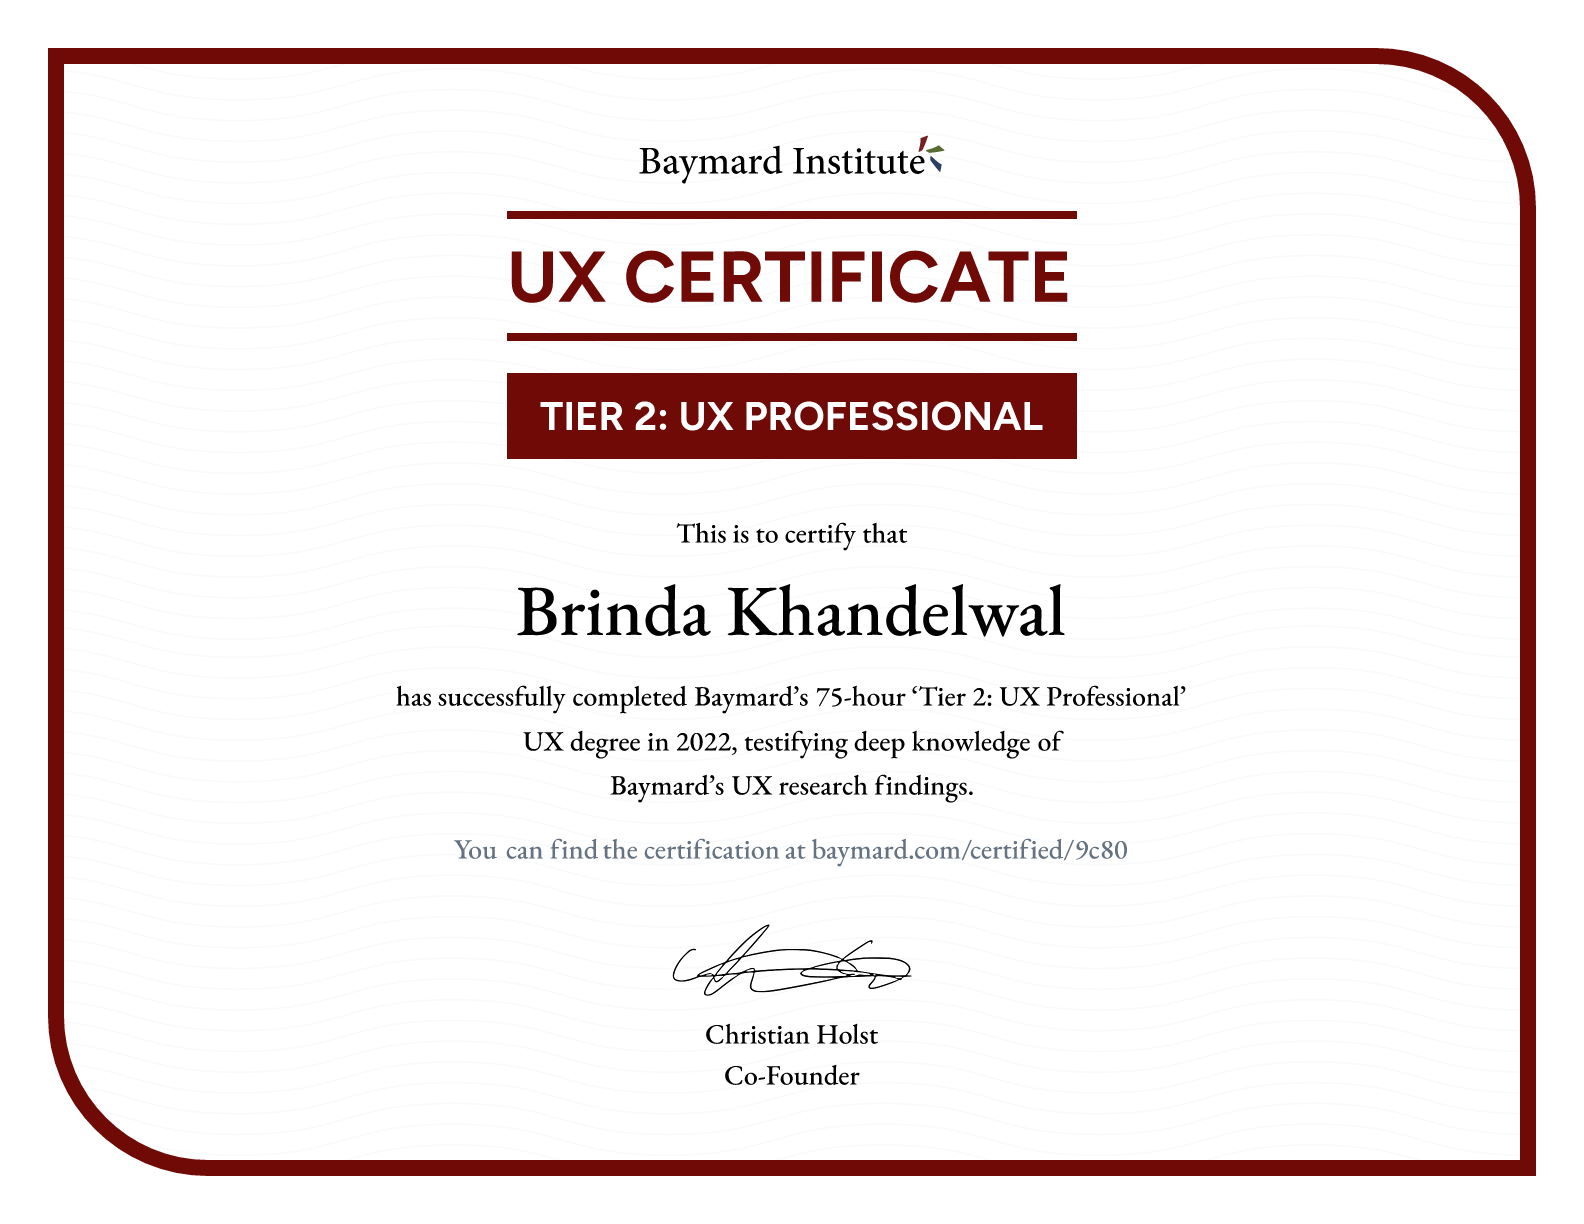 Brinda Khandelwal’s certificate